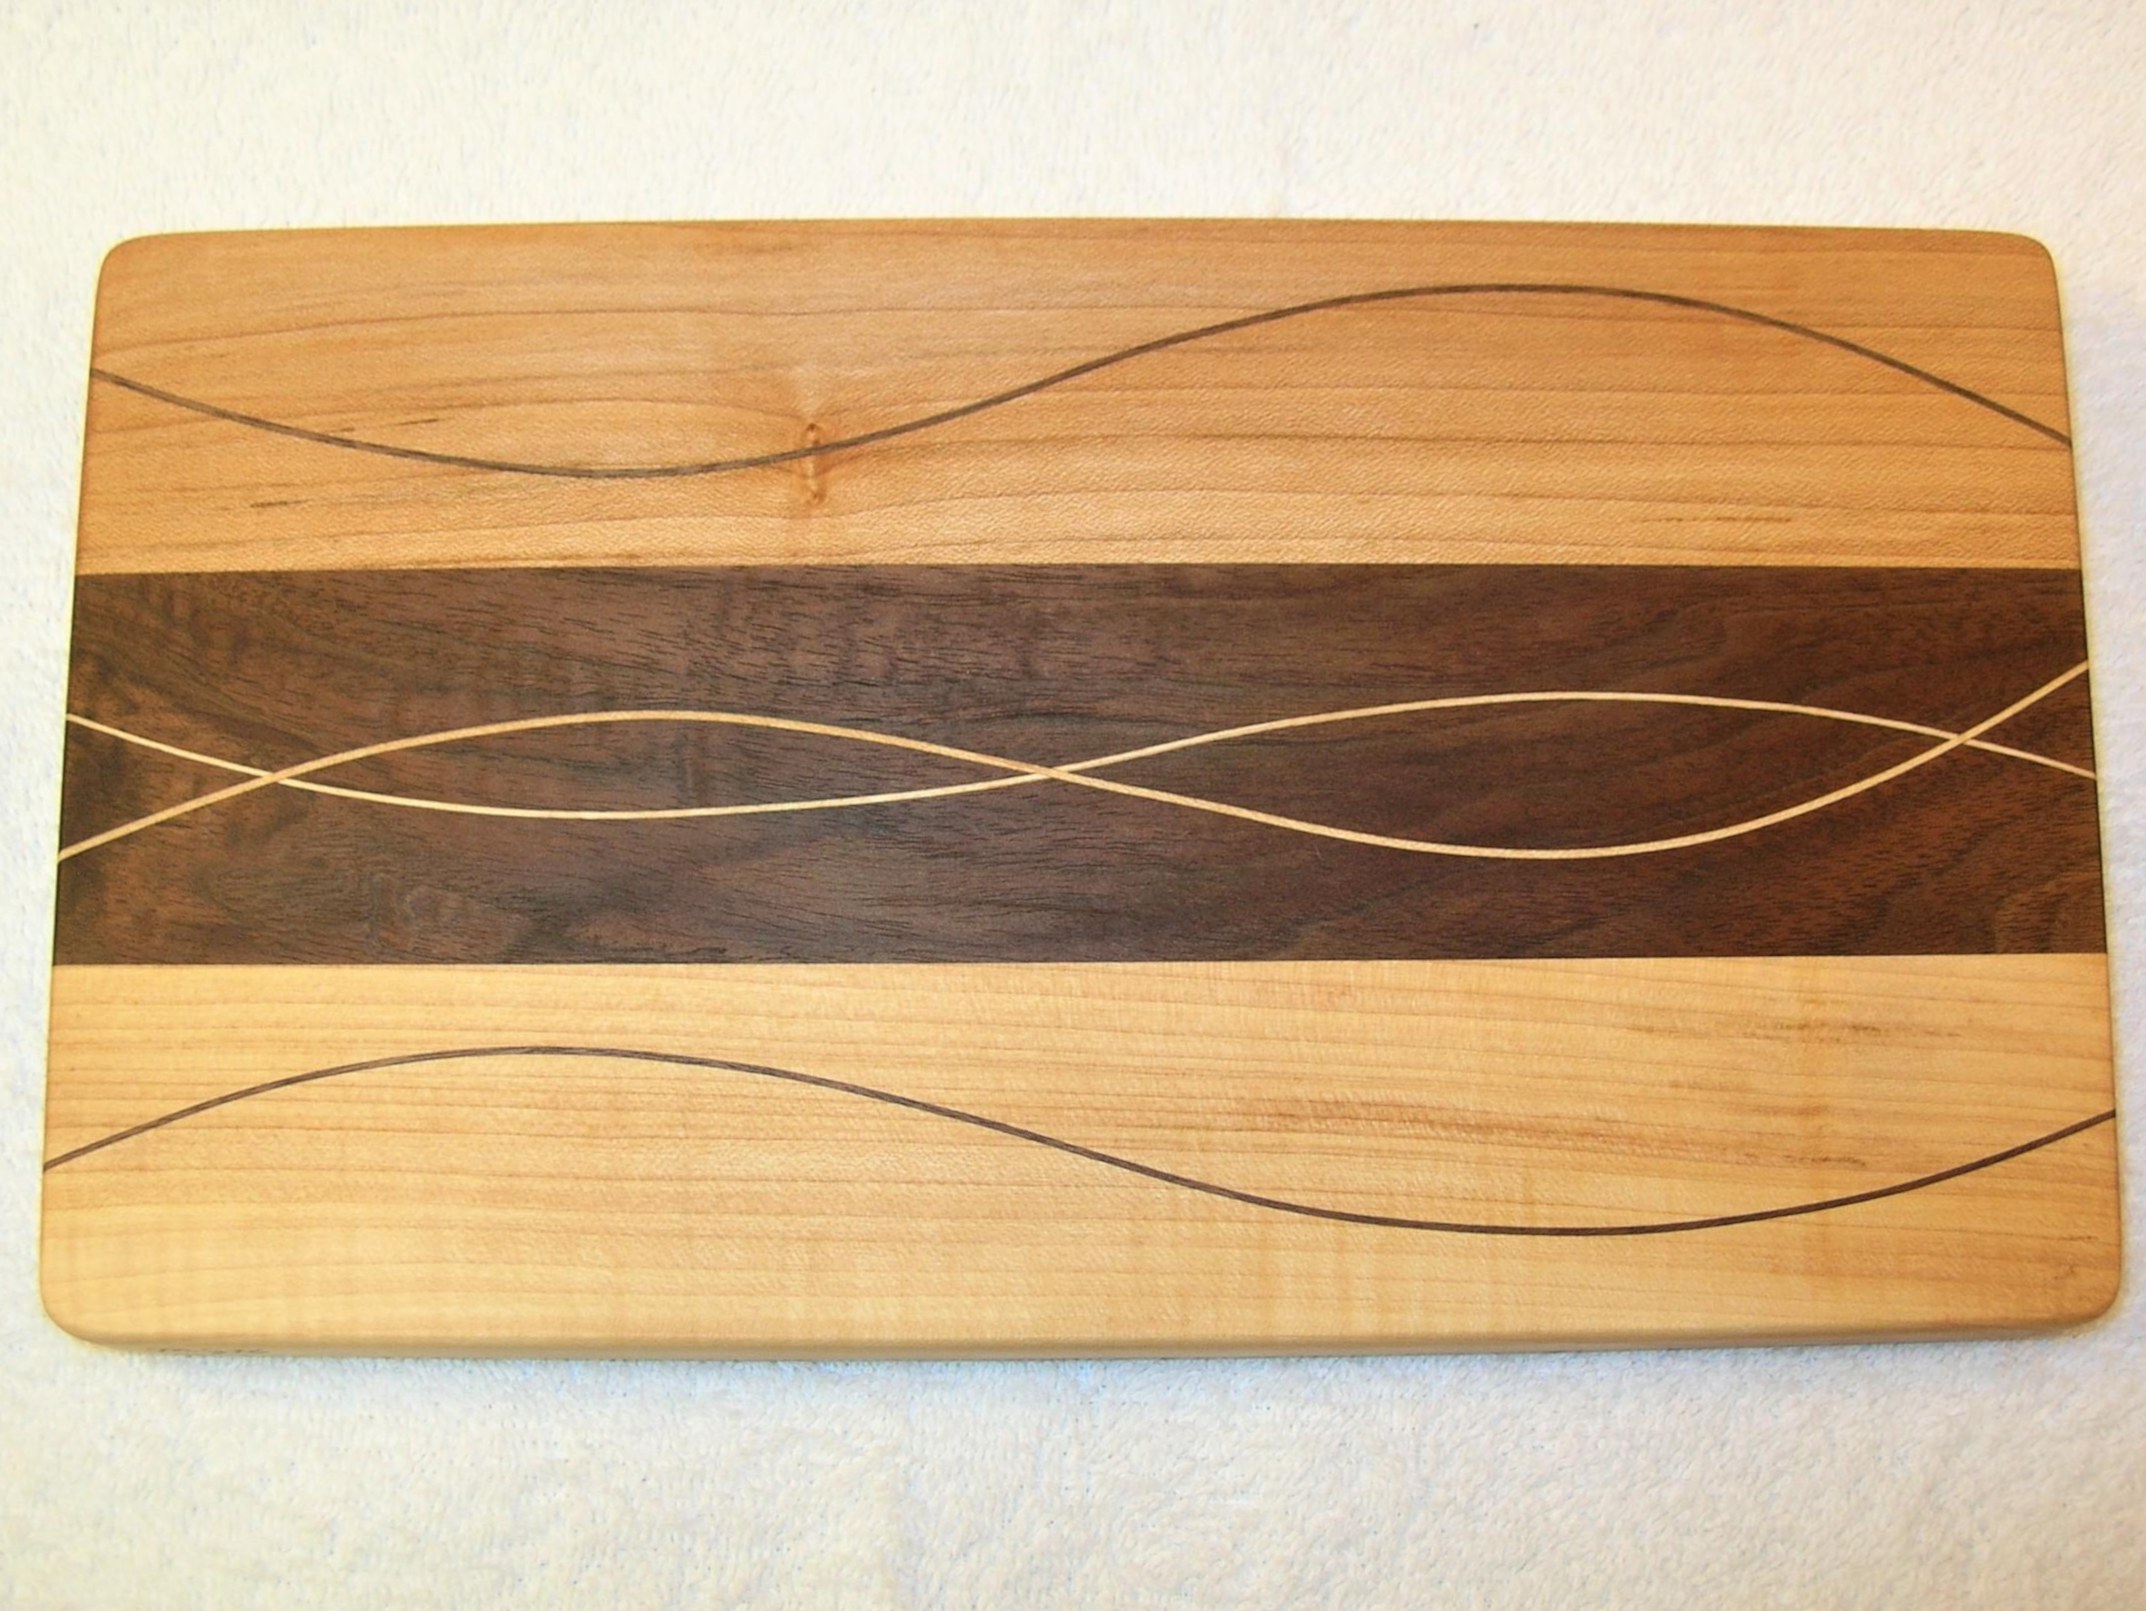 Mike Kalscheur: Woven Cutting Board